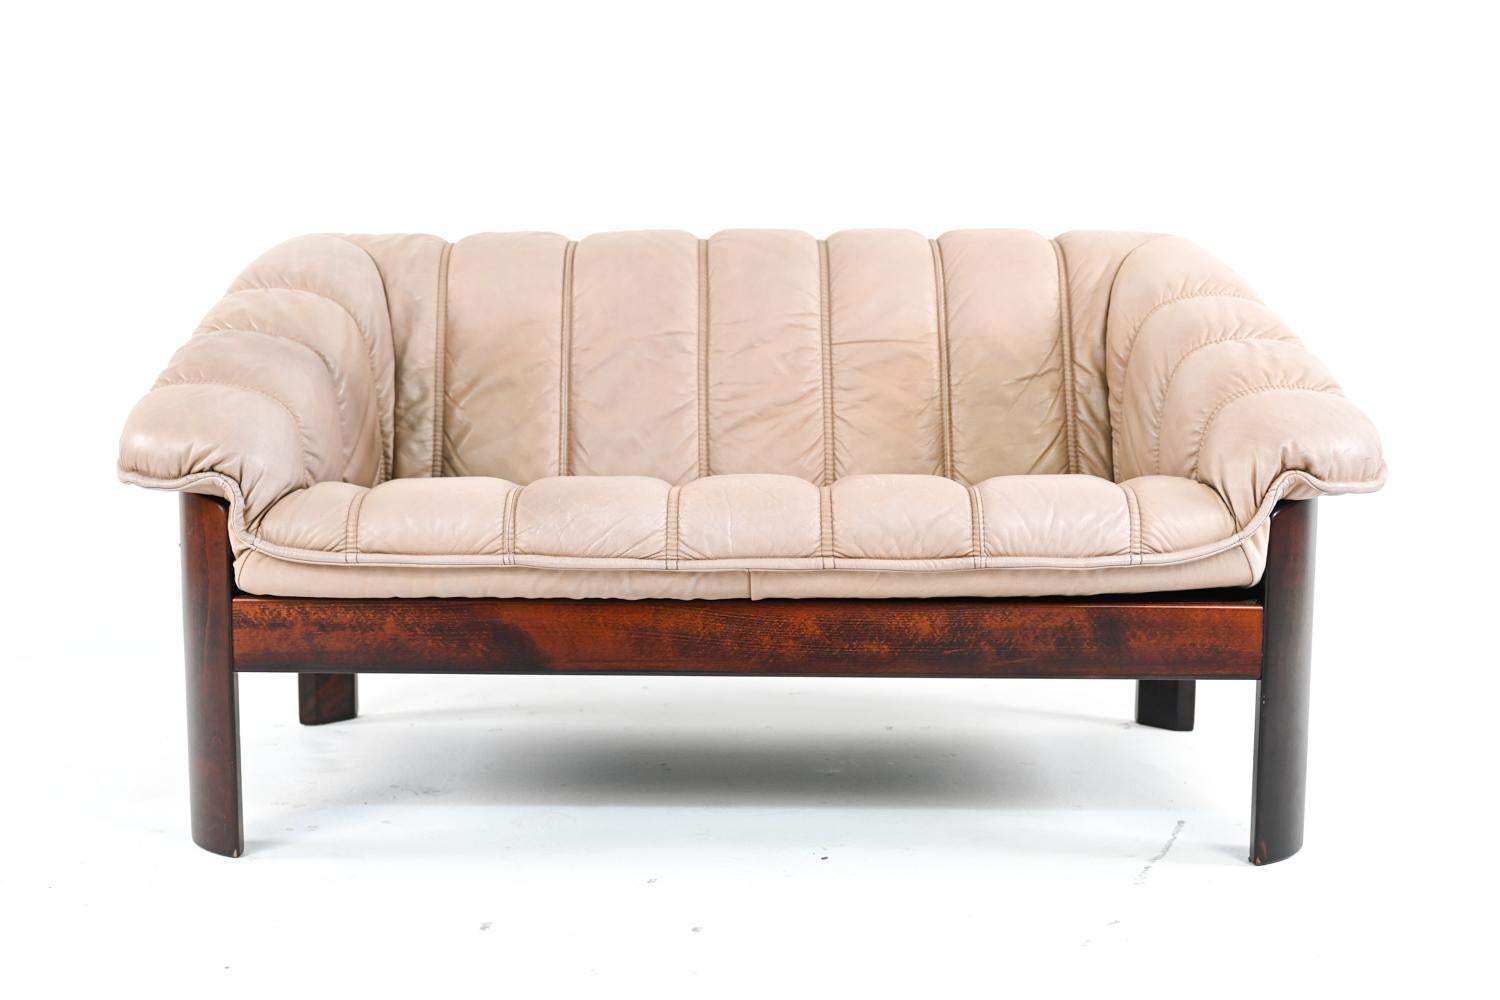 Machen Sie Ihren Wohnraum unvergesslich mit diesem kultigen Sofa und Liegesofa von Ekorness of Norway. Die kanalgenähten Kissen aus schön patiniertem taupefarbenem Leder ruhen auf einem Gestell aus gemasertem Buchenholz, das mit einer satten